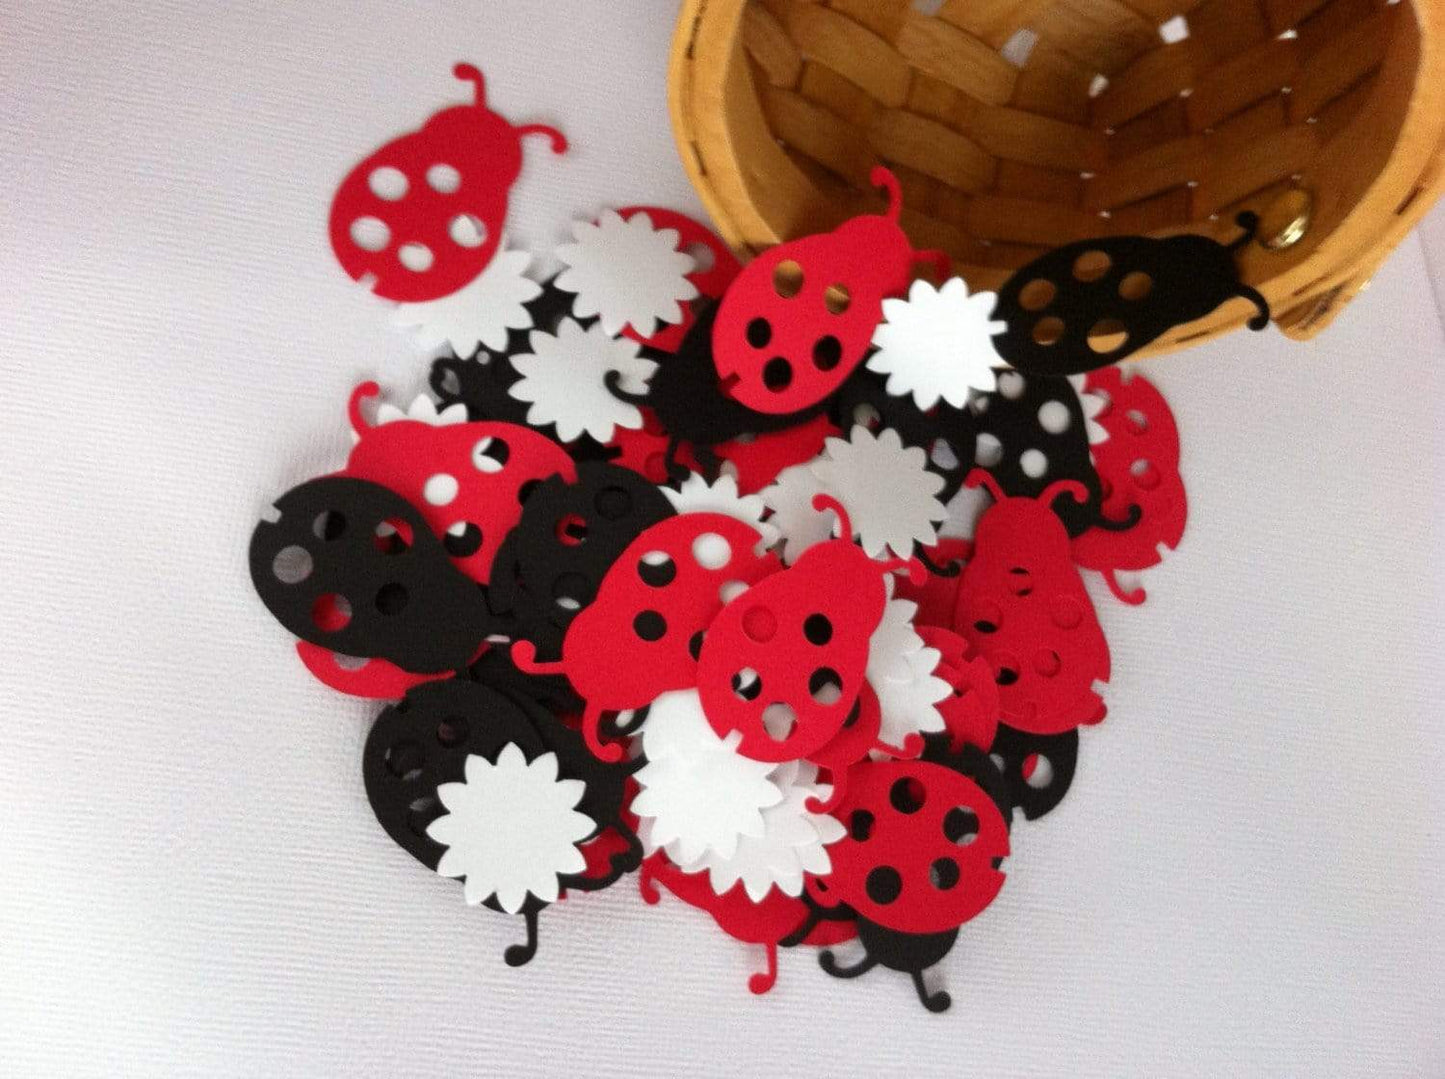 Adriana Ortiz Designs Confetti Ladybug Confetti. Ladybug Party Decoration. 100 Ct. Ladybug Baby Shower.